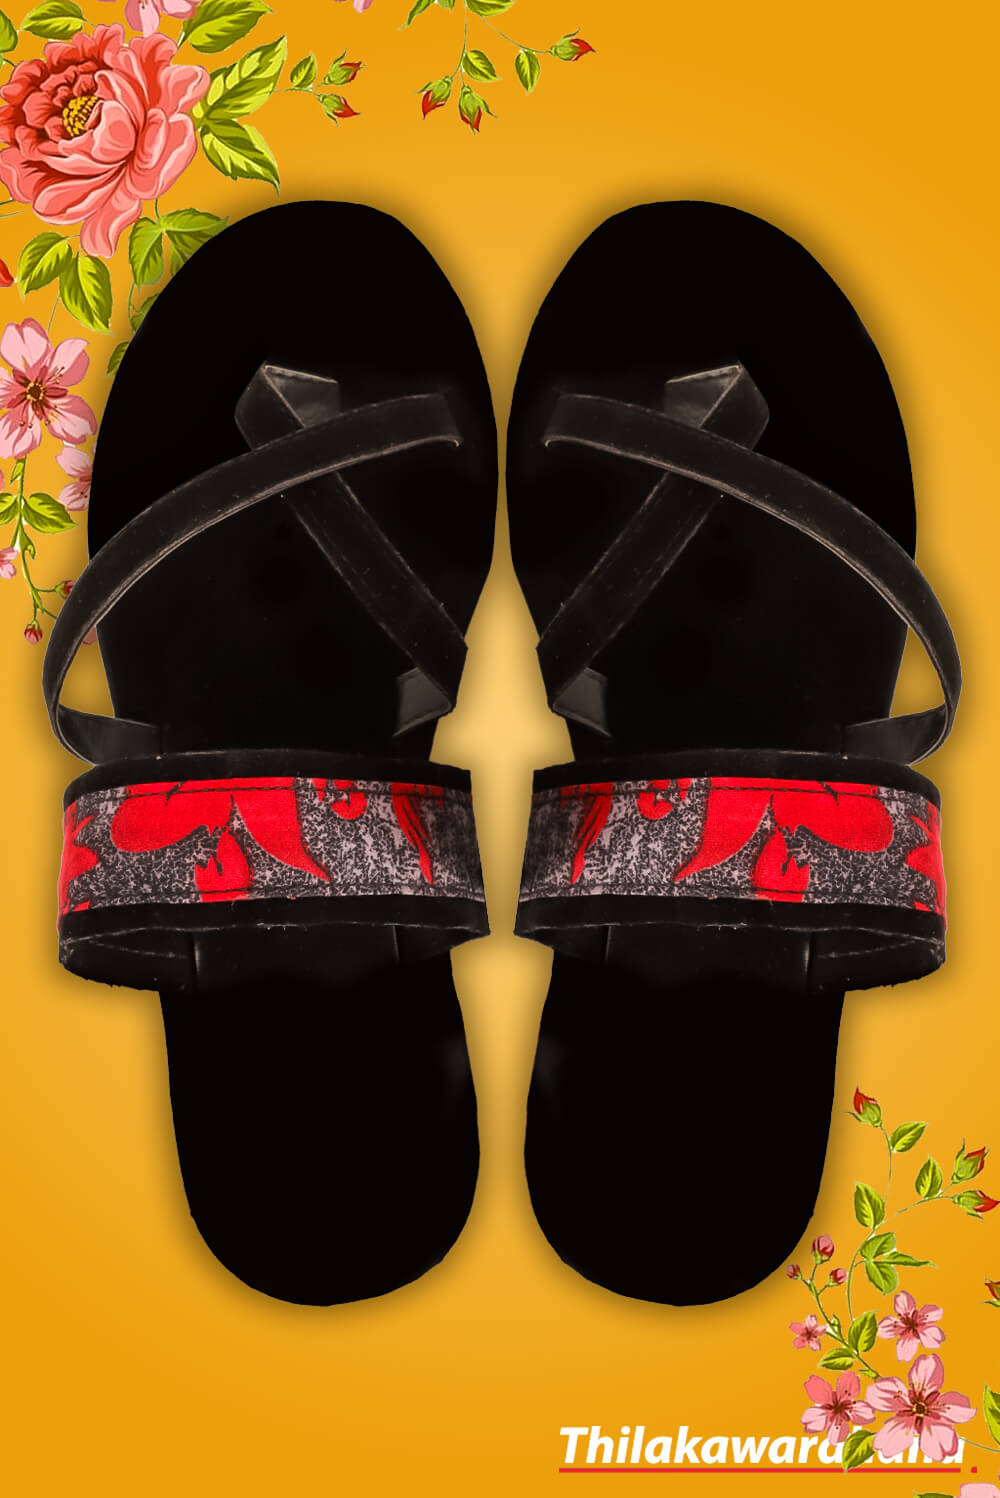 Women's Printed Slippers – Thilakawardhana